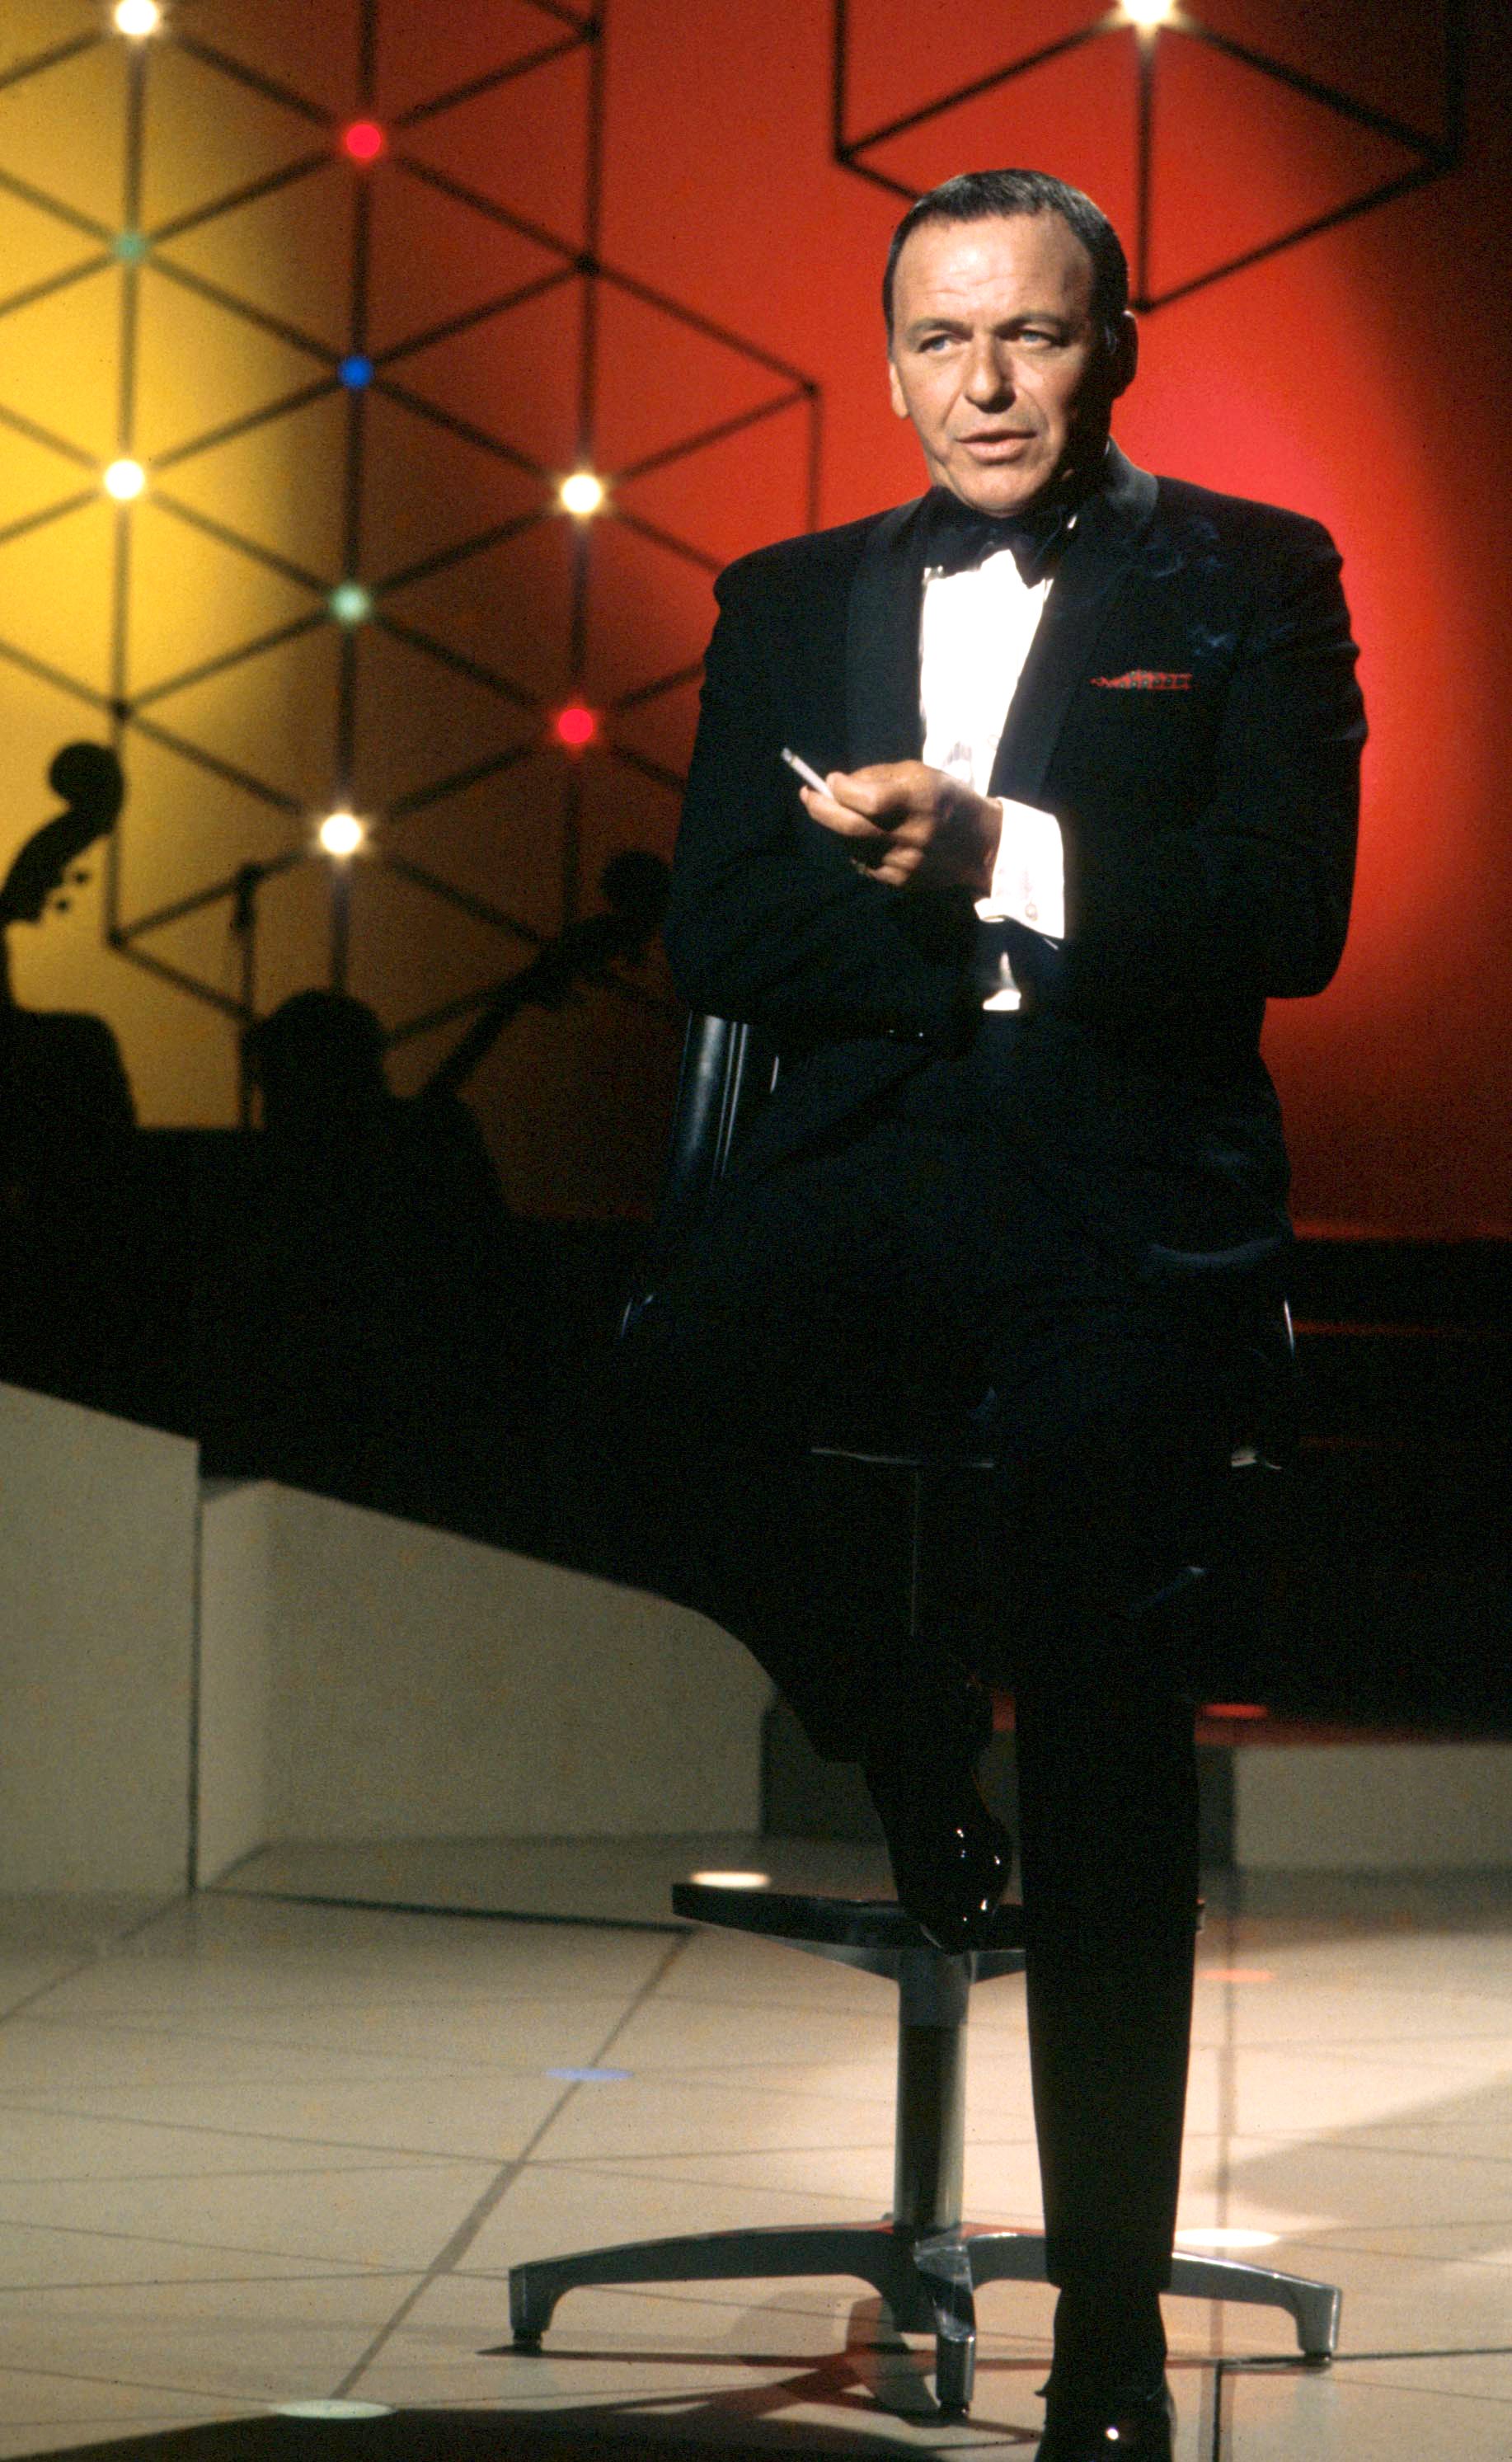 Frank Sinatra, abgebildet während eines Fernsehspecials "Francis Albert Sinatra Does His Thing", 1968, Los Angeles, Kalifornien. | Quelle: Getty Images